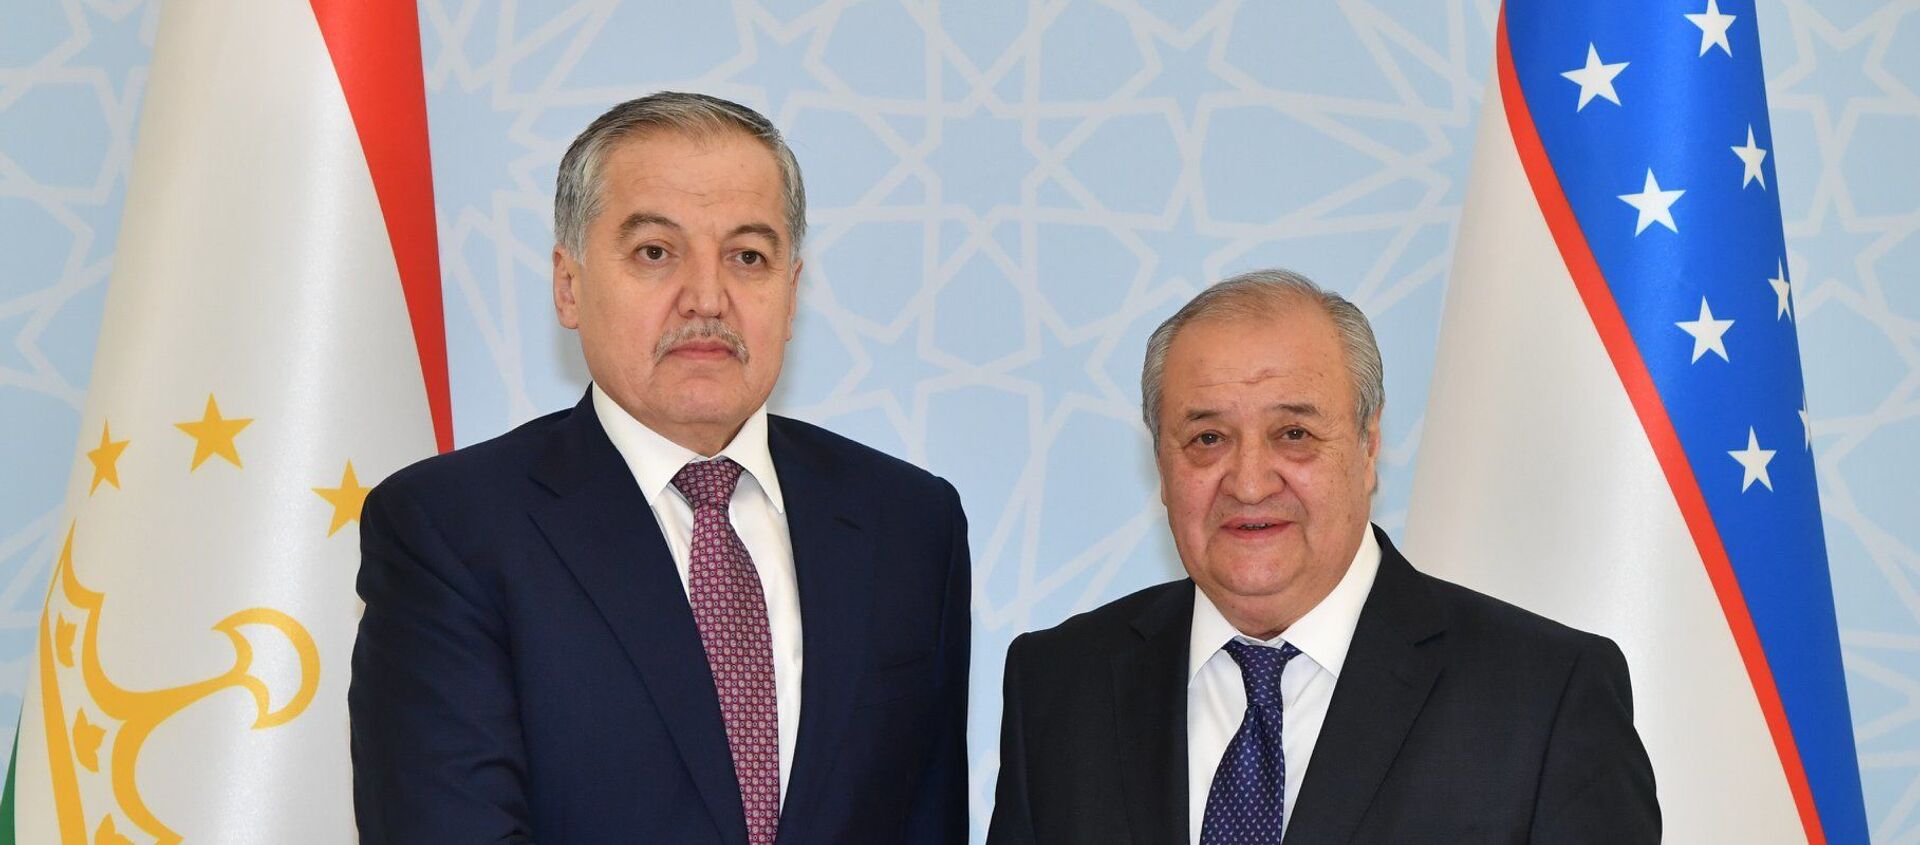 Встреча министров иностранных дел Таджикистана и Узбекистана - Sputnik Таджикистан, 1920, 13.01.2019